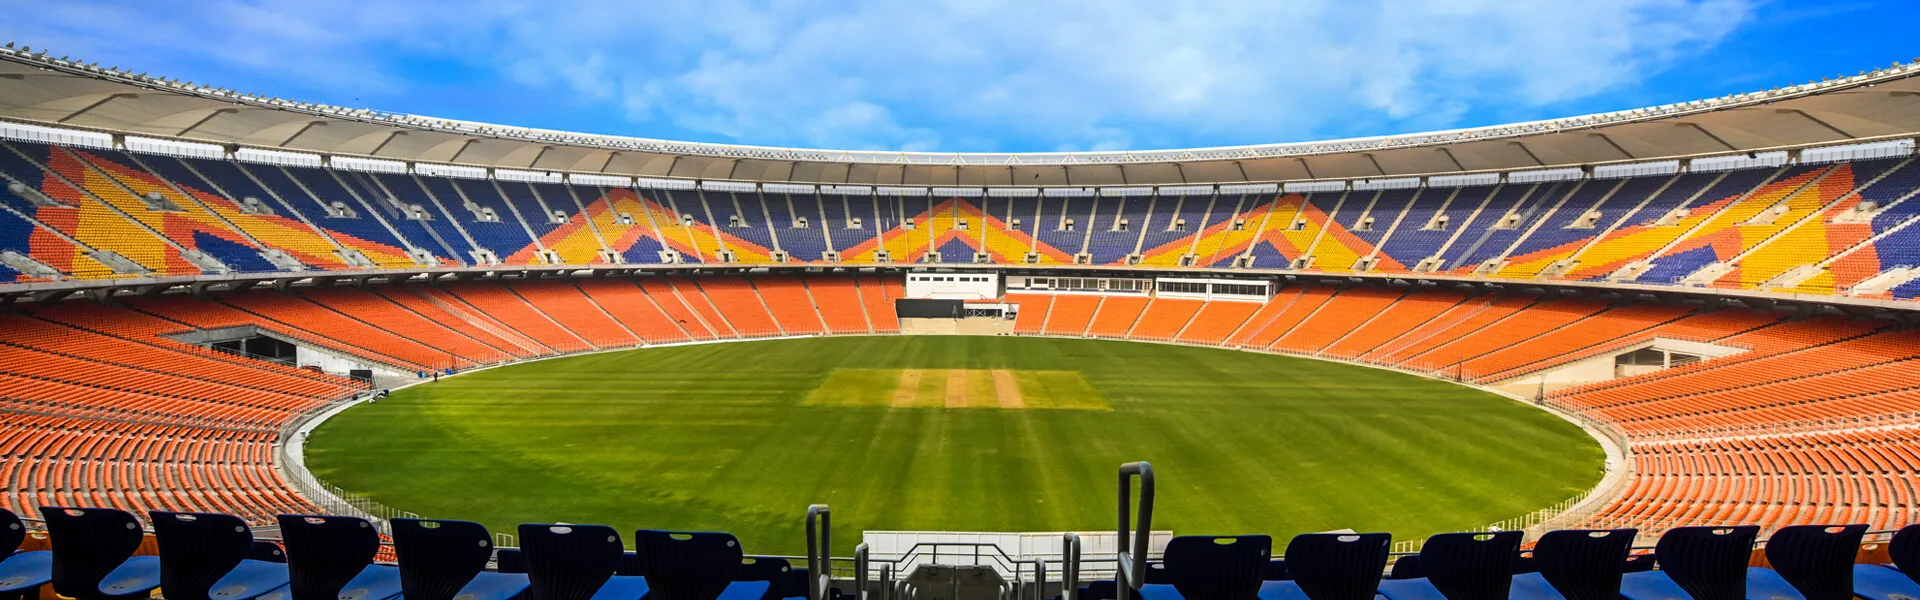 Narendra Modi Stadium in Ahmedabad is the largest stadium in India.  